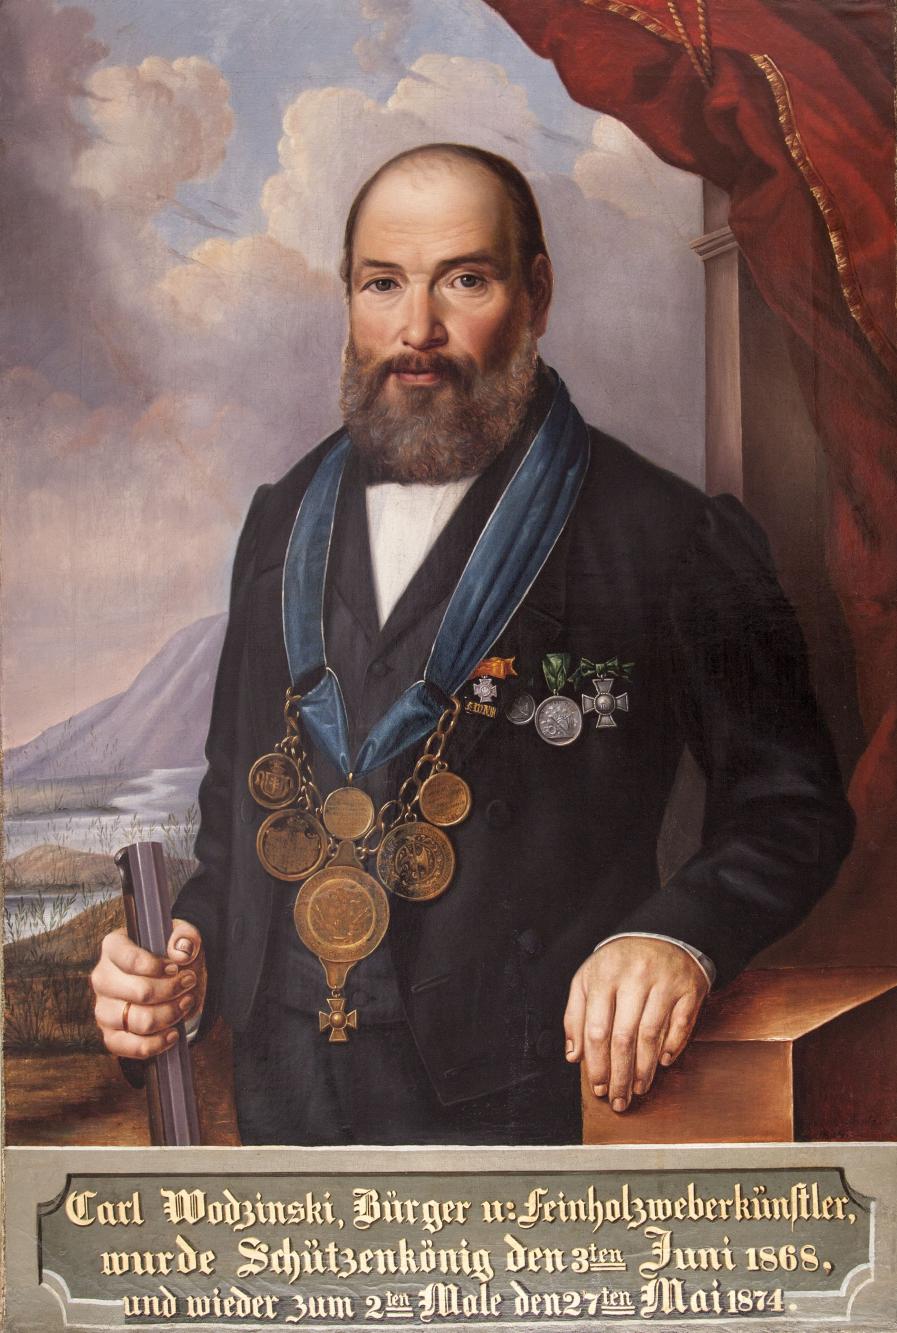 Portret króla kurkowego Carla Wodzinskiego